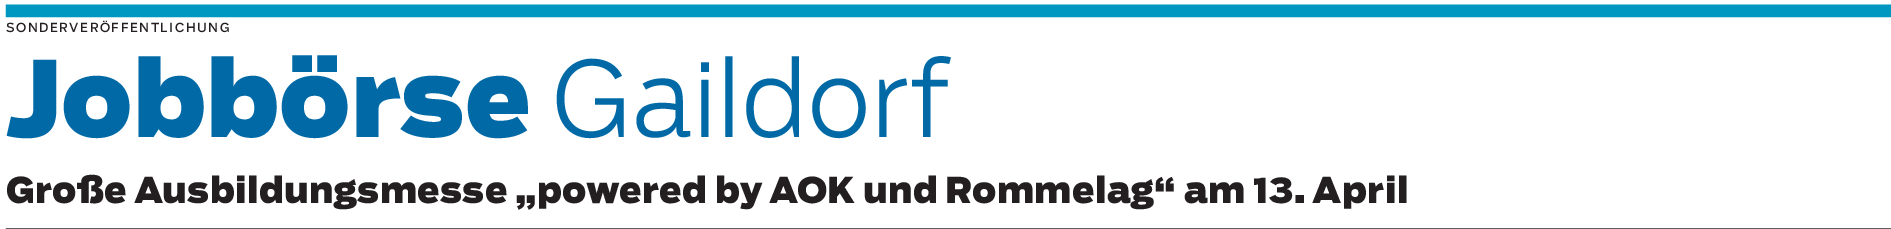 Jobbörse Gaildorf: Startschuss für die Zukunft